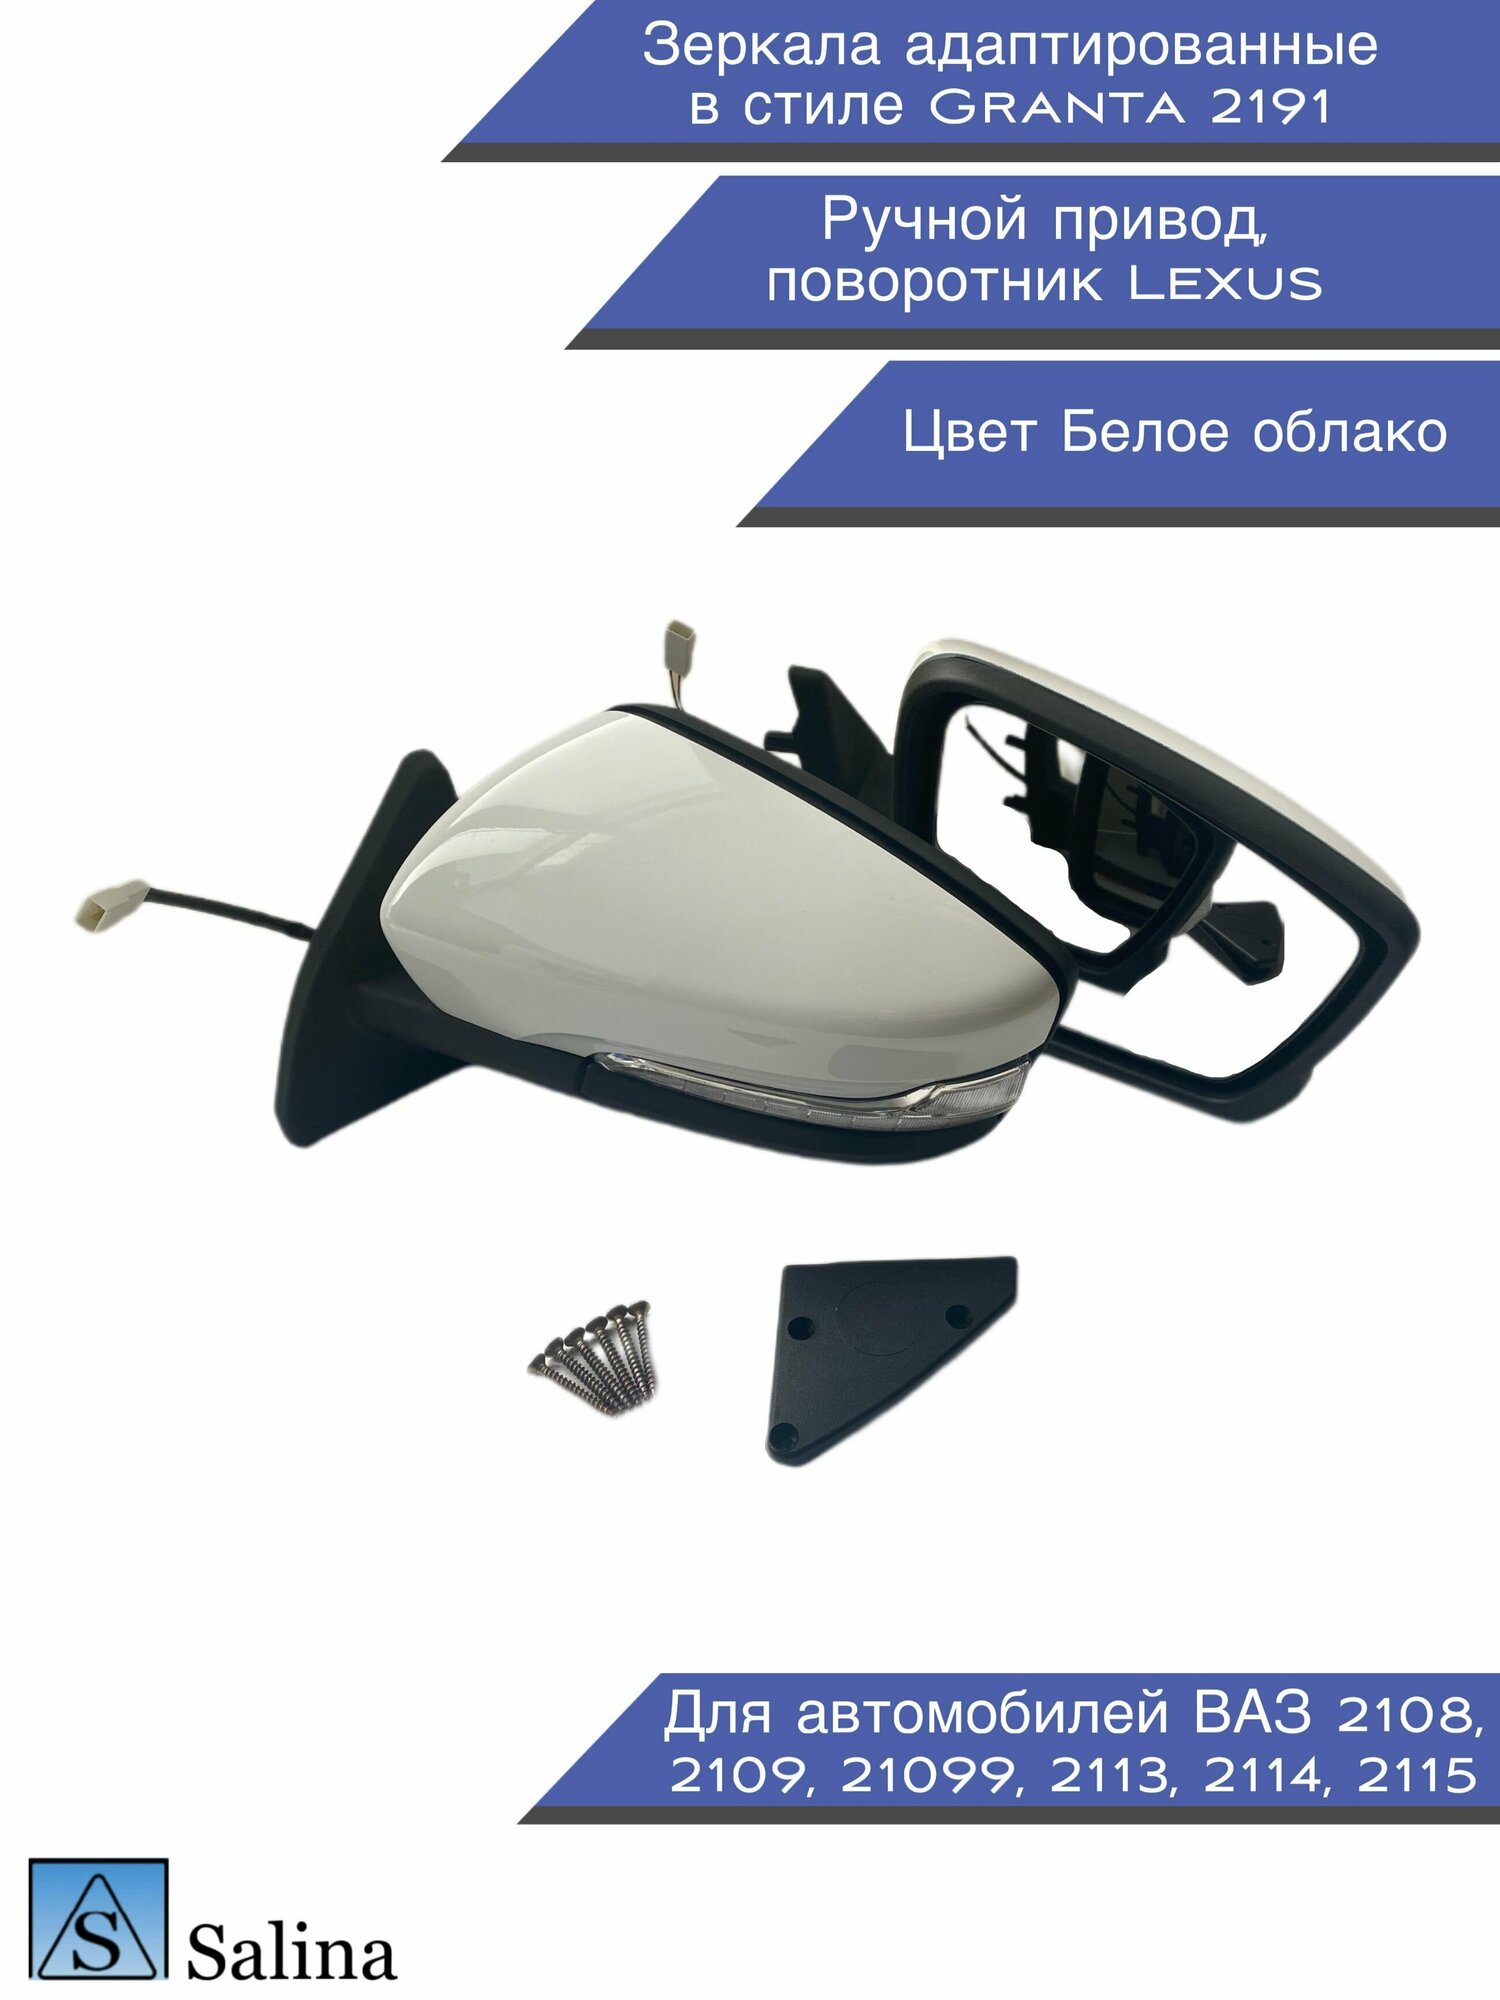 Зеркала адаптированные в стиле Гранта 2191 на ВАЗ 2108-2109, 2113-2115 с ручным приводом и повторителем Lexus, цвет белое облако